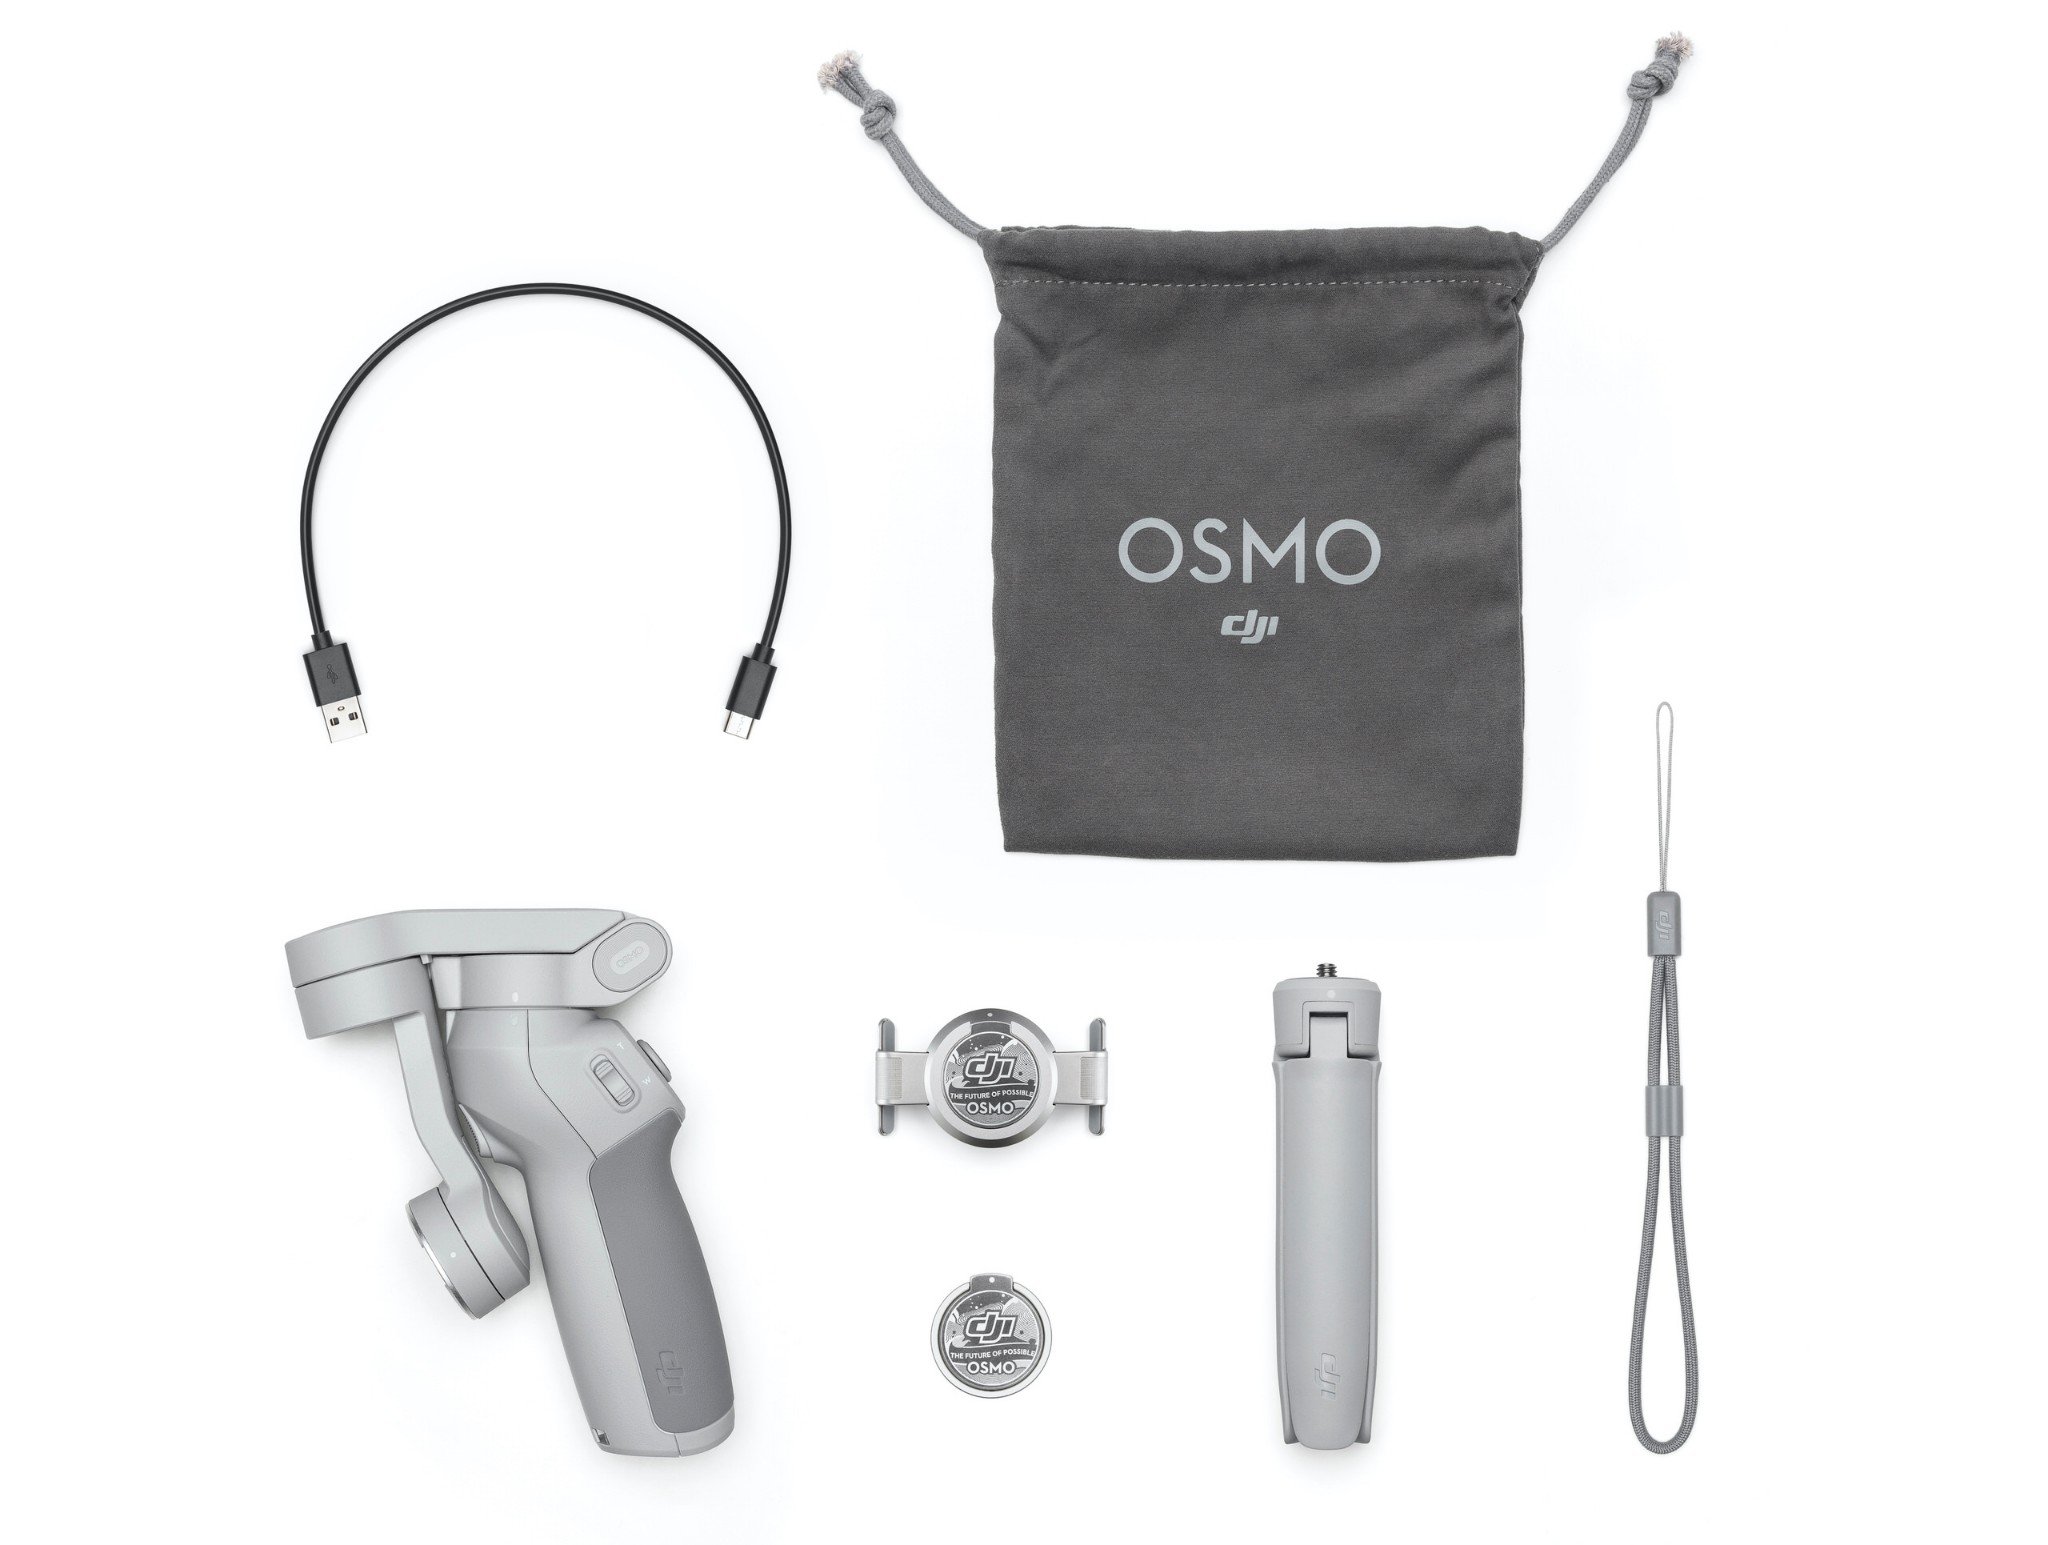 DJI ra mắt gimbal Osmo Mobile 4 mới với ngàm gắn nam châm tiện lợi, giá 3.5 triệu